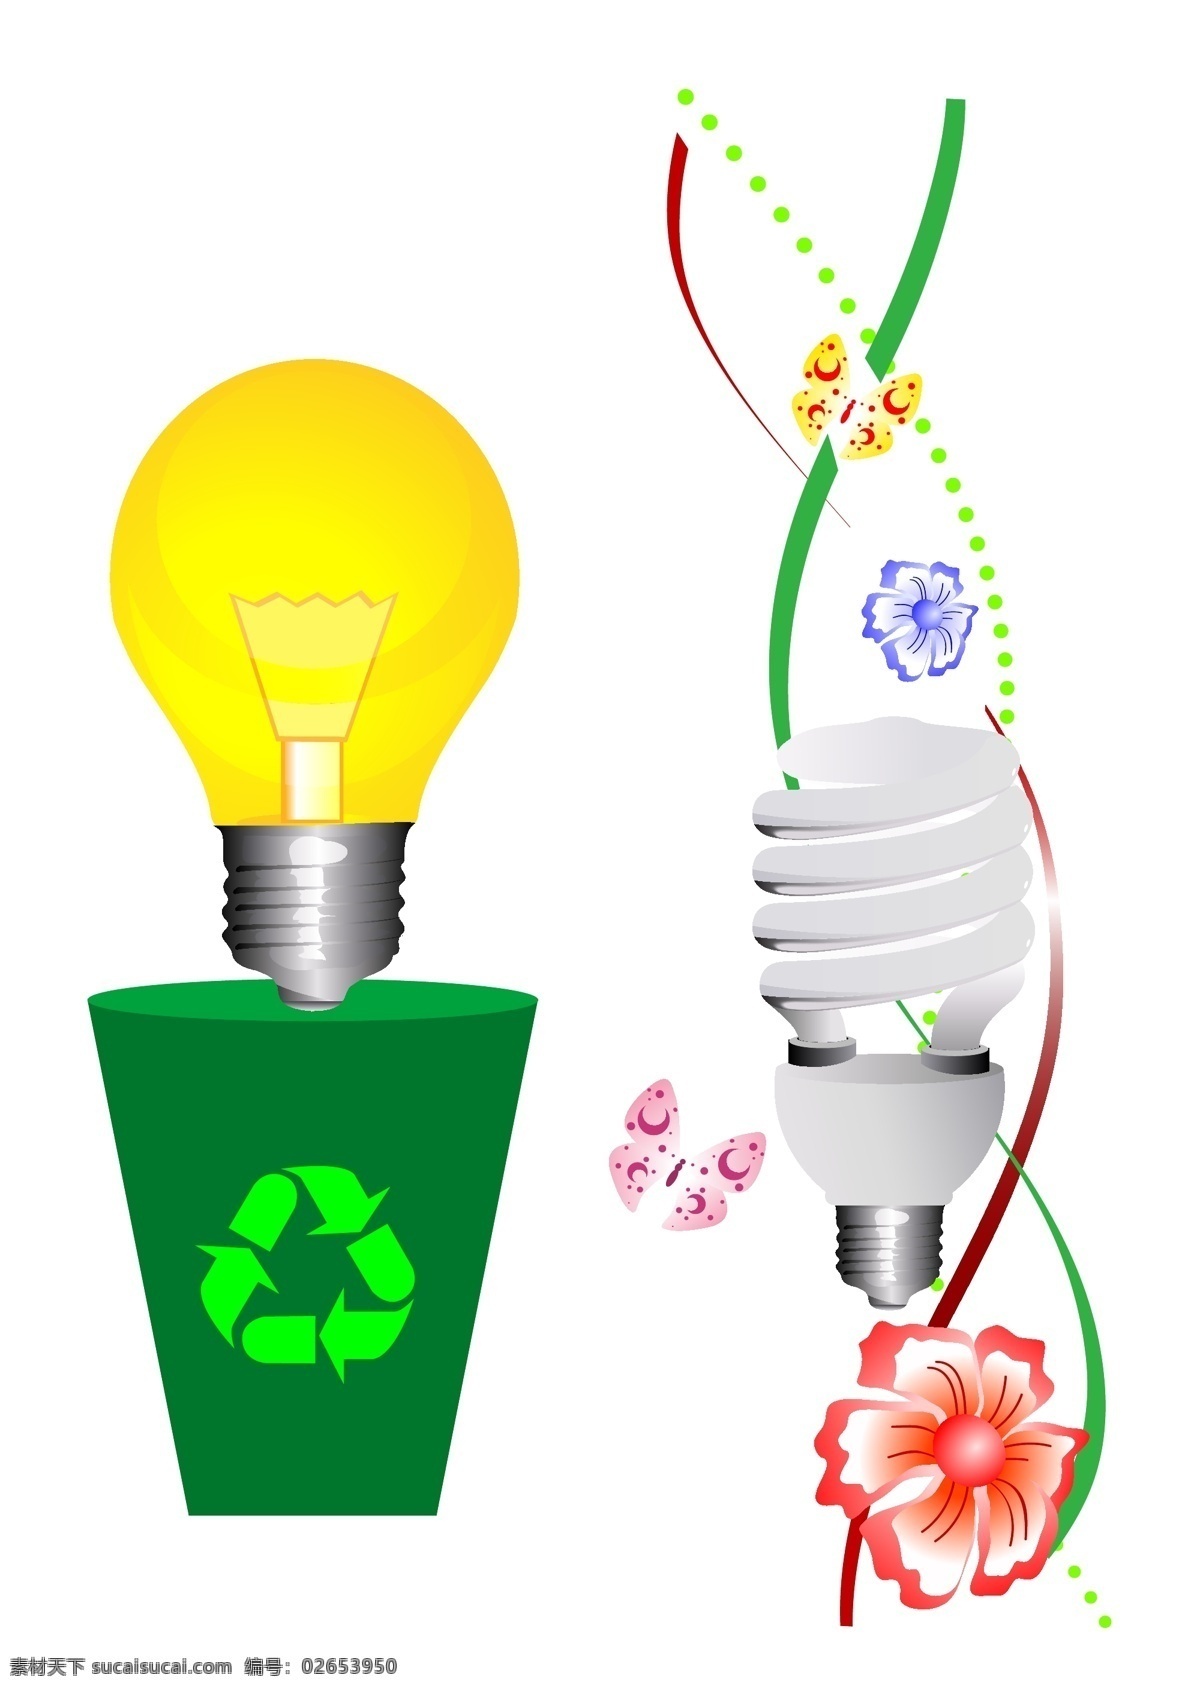 包装设计 花纹 环保标志 环保节能 节能 节能灯 商业设计 绿色环保 设计素材 节能矢量素材 节能模板下载 螺旋线 矢量 家居装饰素材 灯饰素材